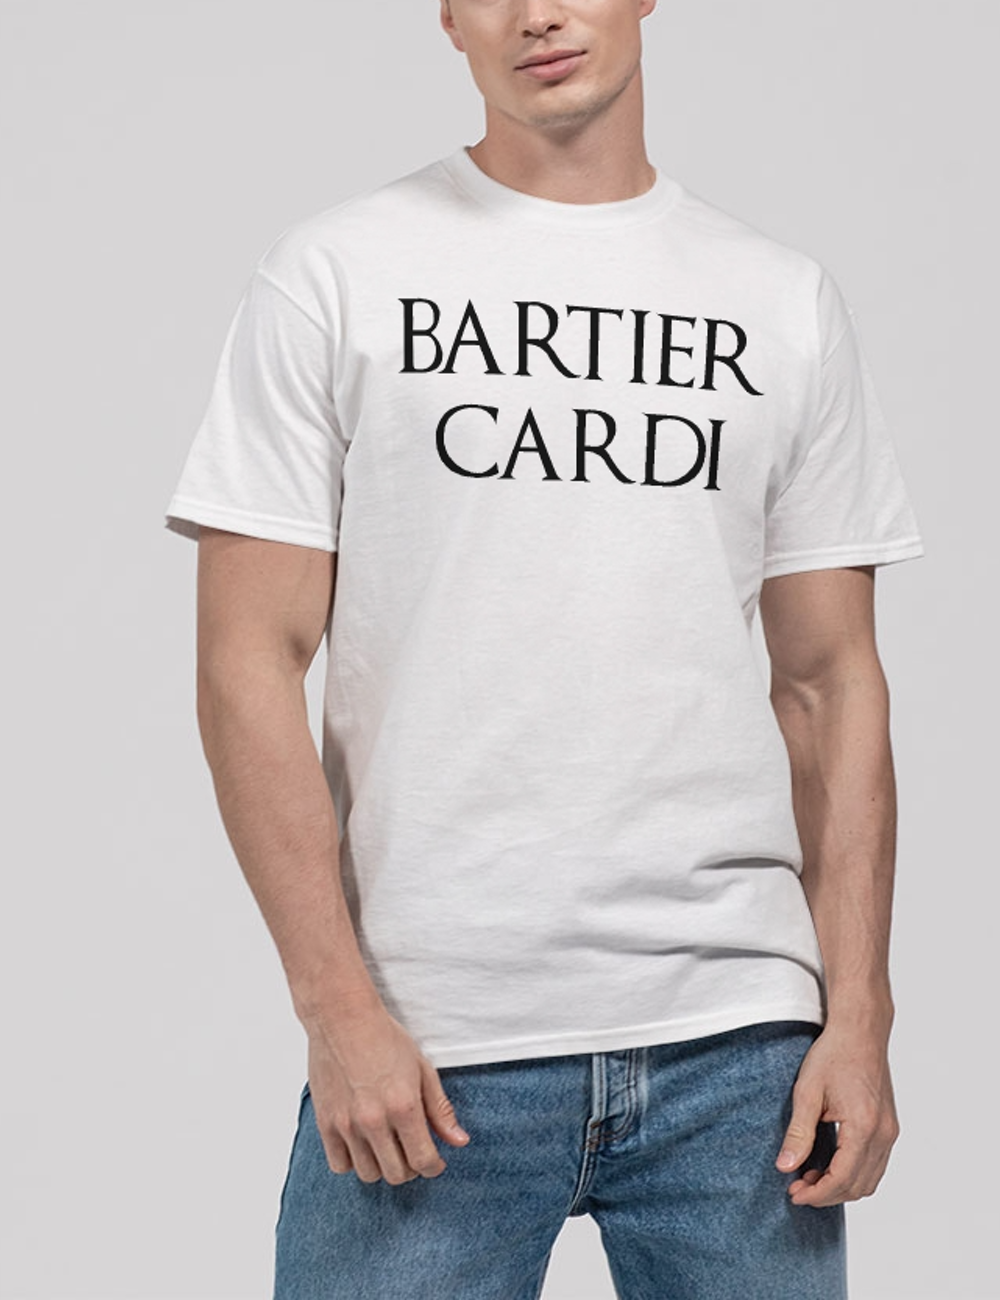 Bartier Cardi Men's Classic T-Shirt OniTakai